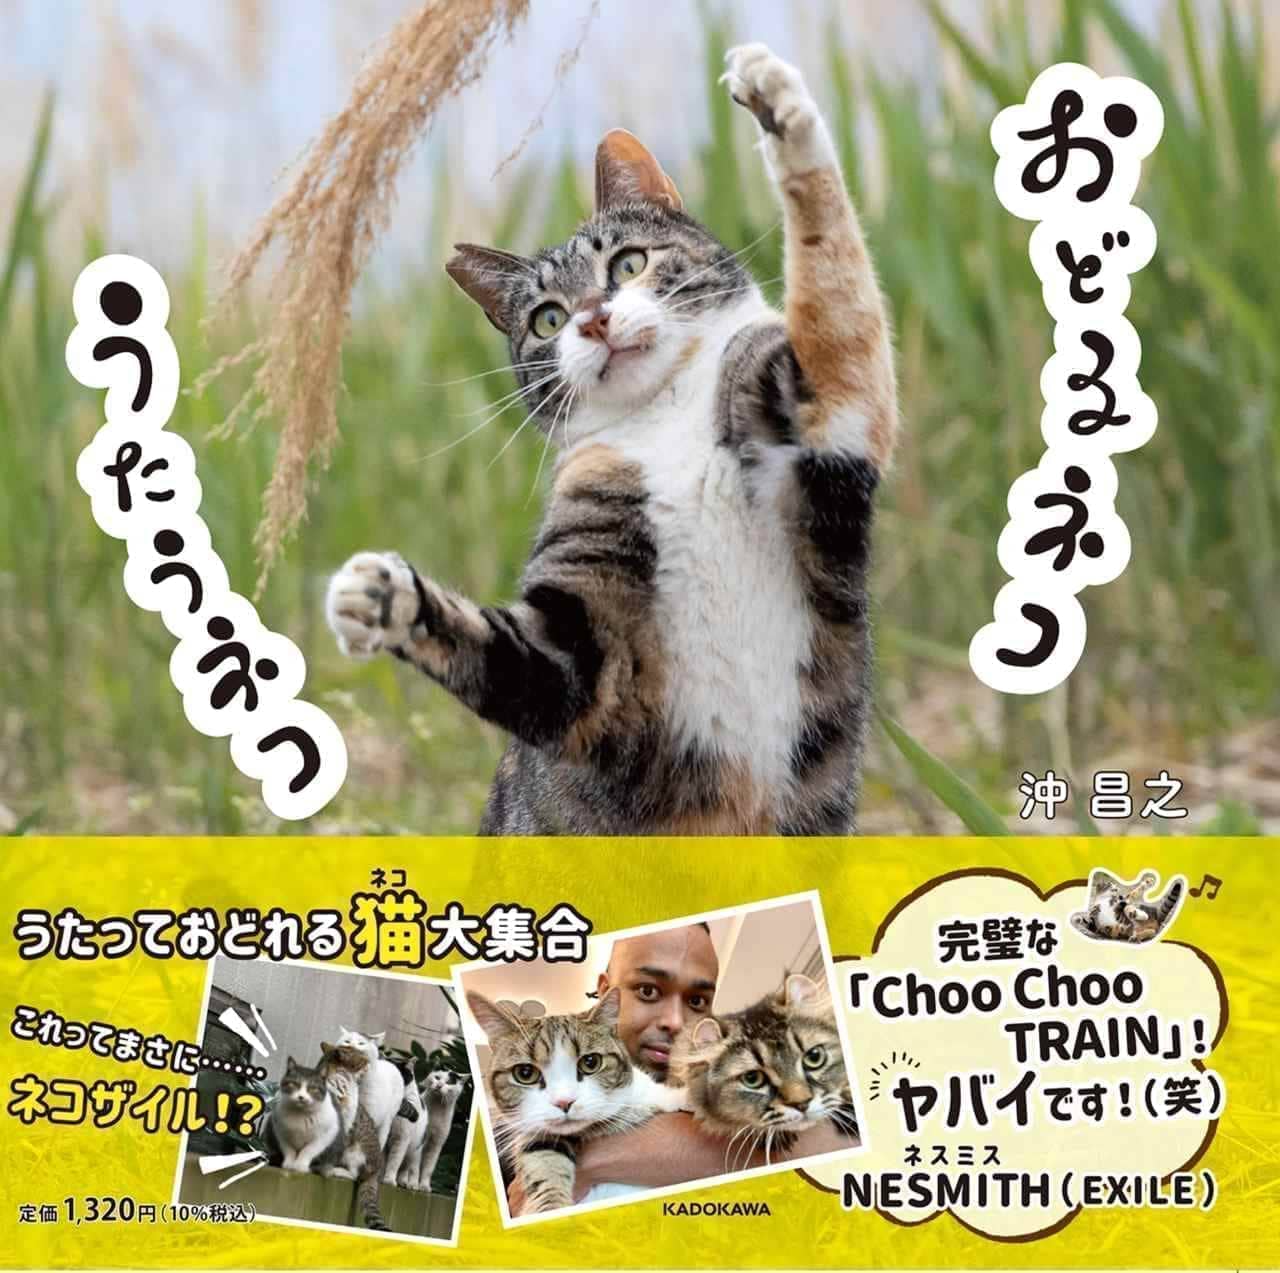 ネコ写真集『おどるネコうたうネコ』9月18日発売 沖昌之さんが撮影した想像力を刺激するネコたち